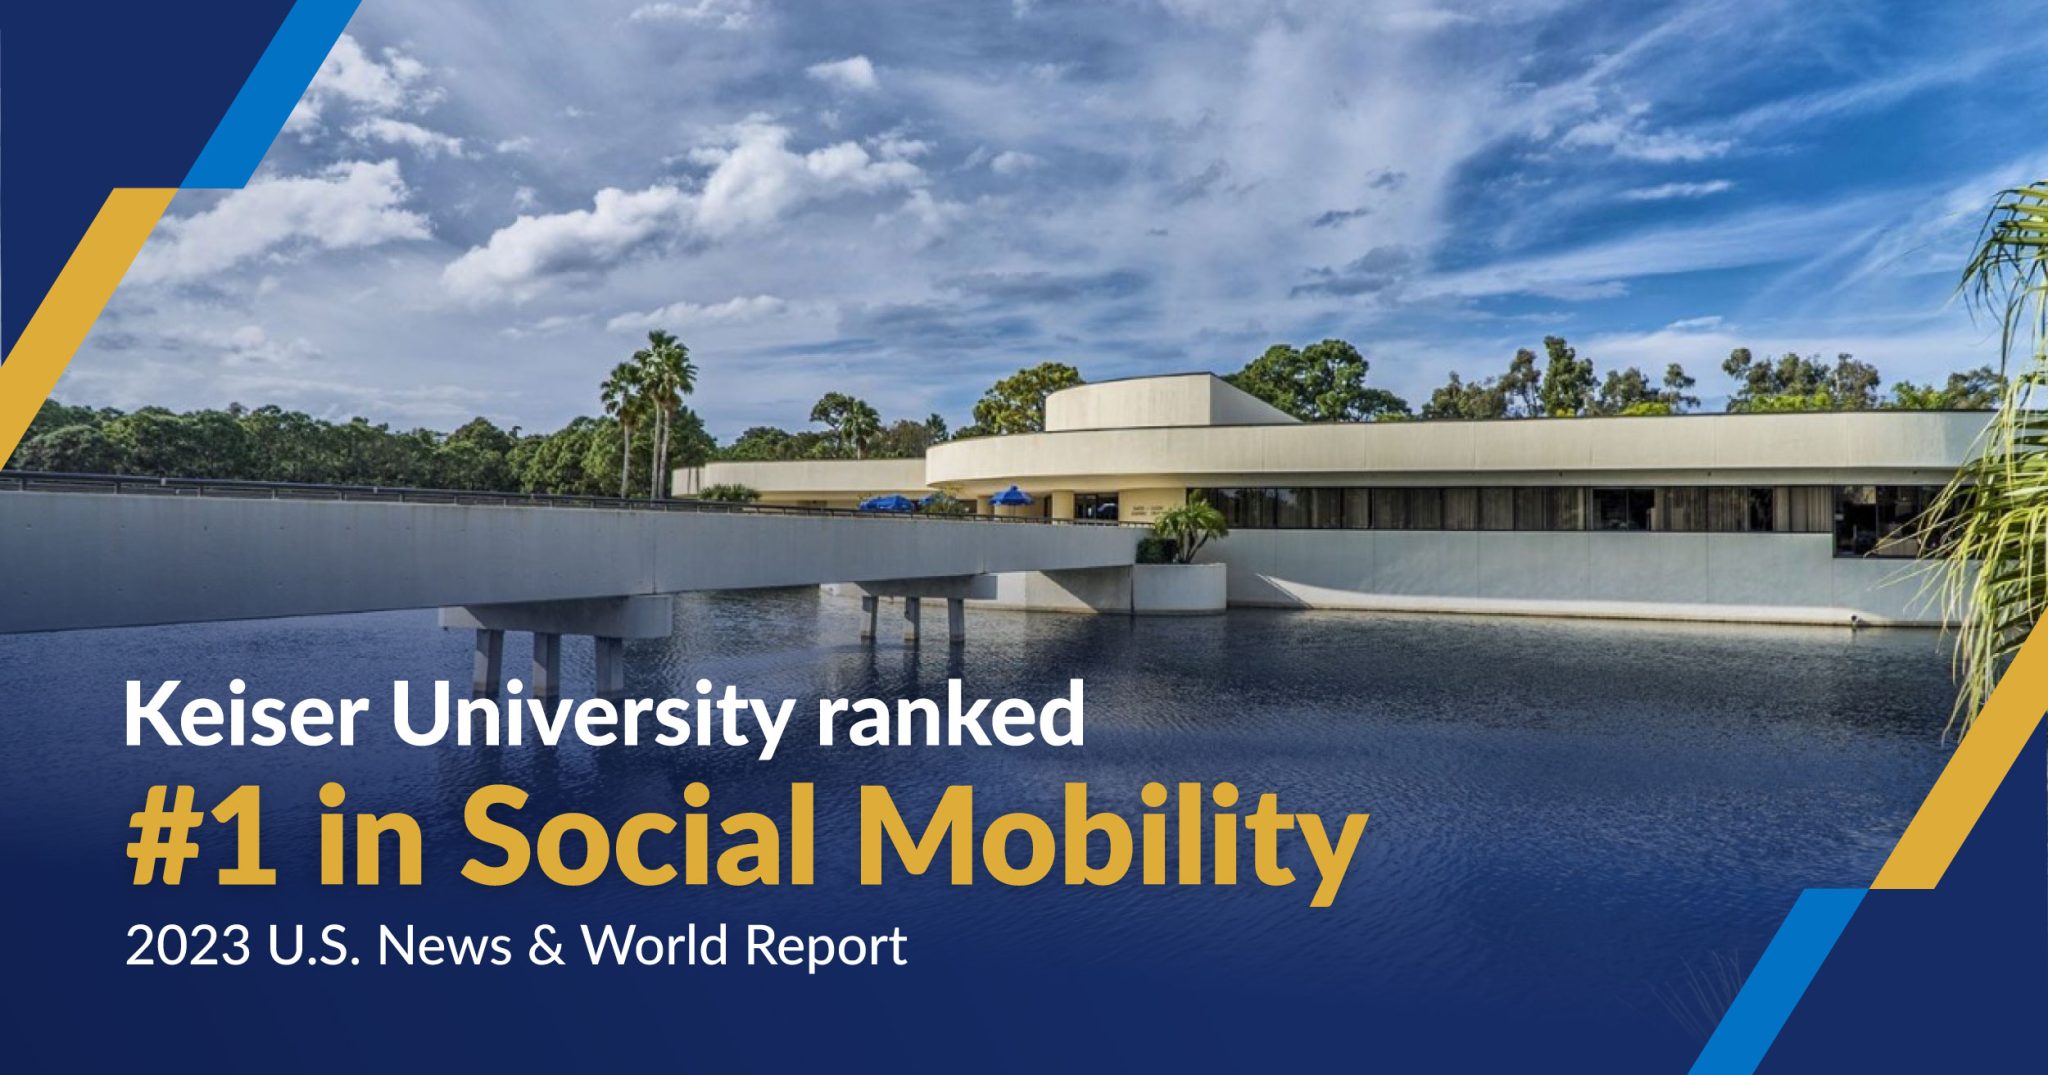 Keiser University Tops U.S. News & World Report Ranking for Social Mobility